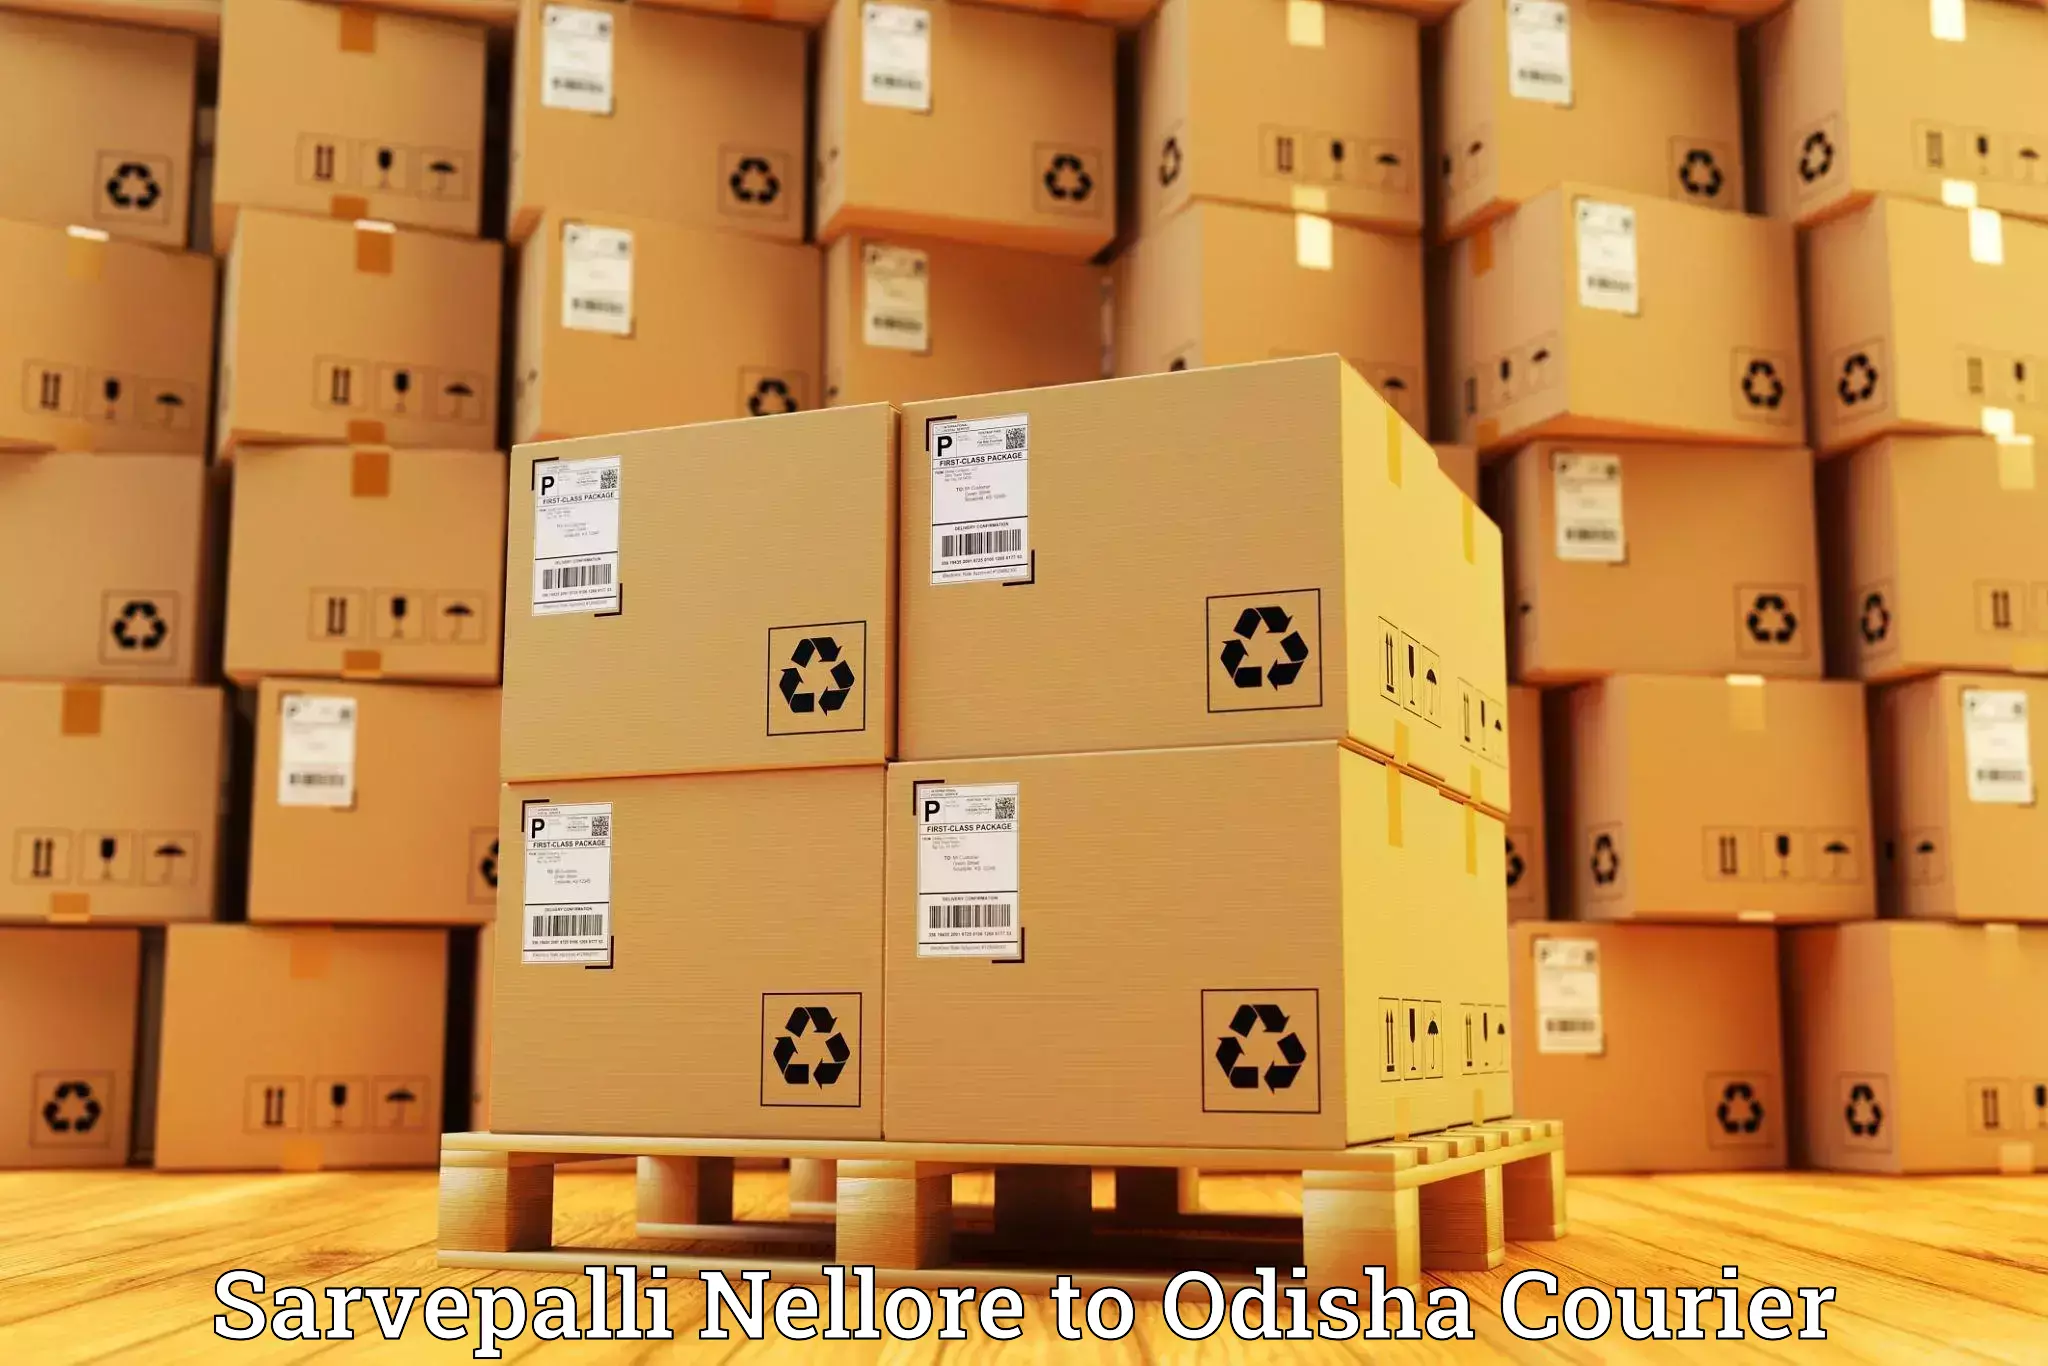 Luggage delivery system Sarvepalli Nellore to Odisha